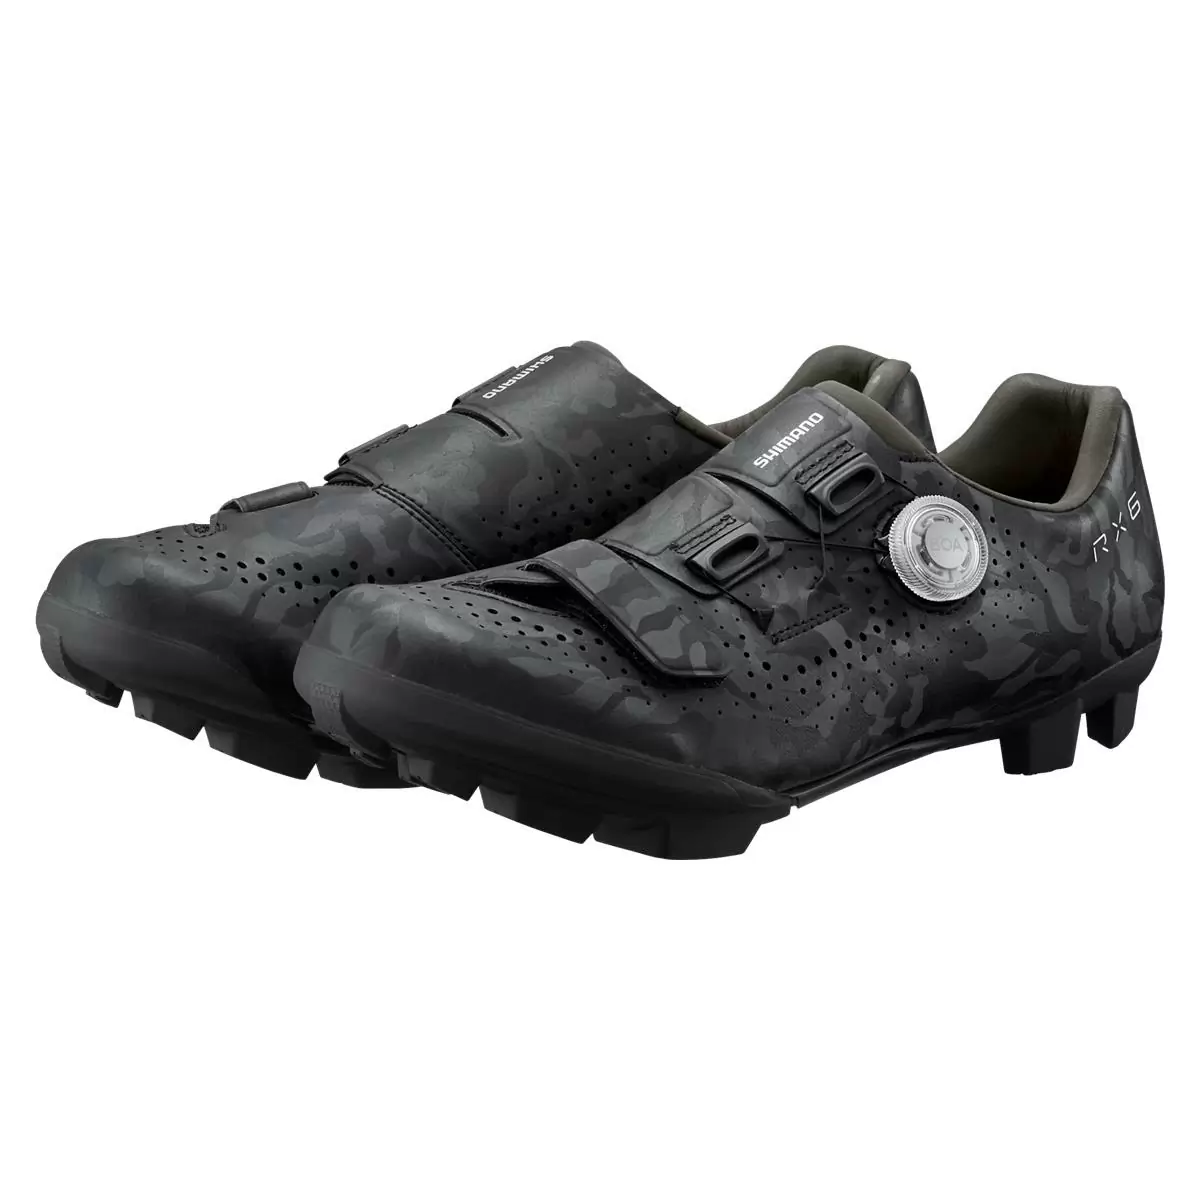 MTB / Gravel Shoes SH-RX600 RX6 Black Size 43 #3